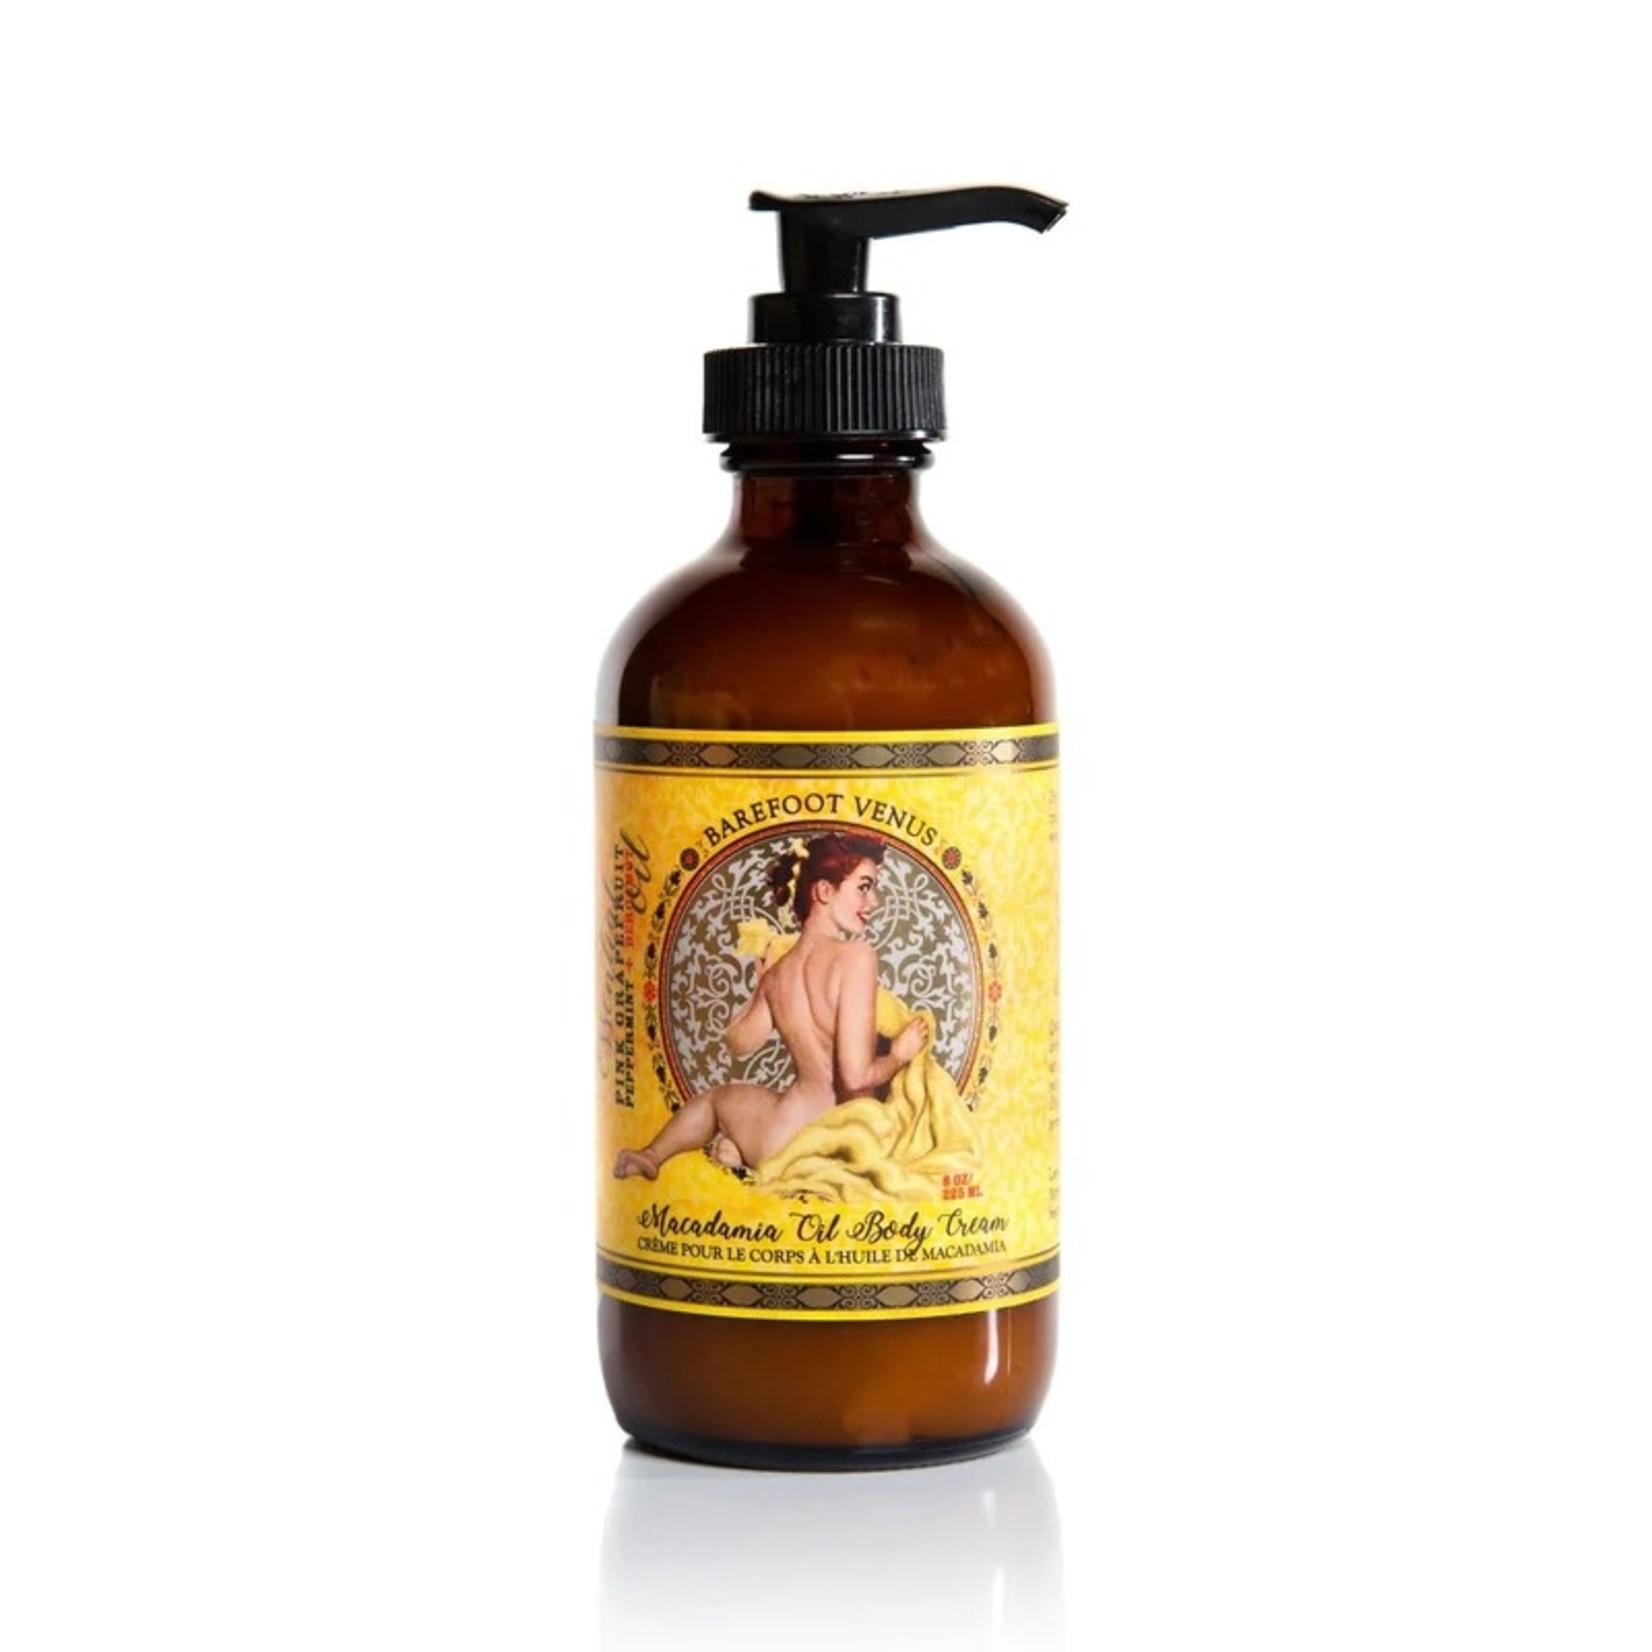 Barefoot Venus Essential Oil Body Cream